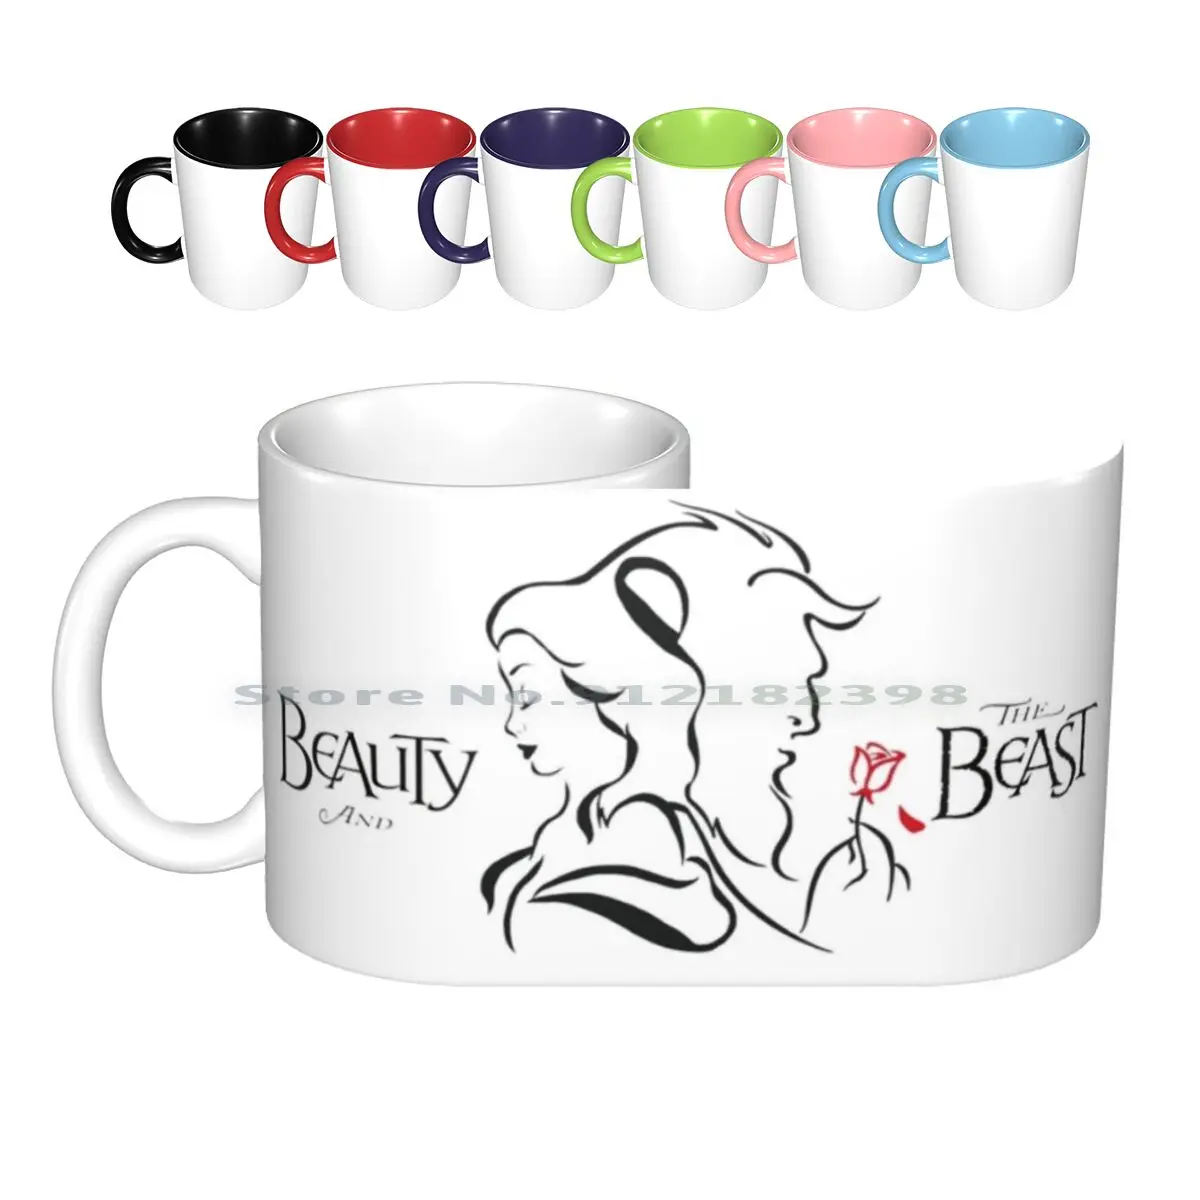 

Керамические кружки, кофейные чашки, кружка для молока, чая, кружка Принцесса Белль, принцесса Белль, Адам, музыкальный логотип из мультфиль...